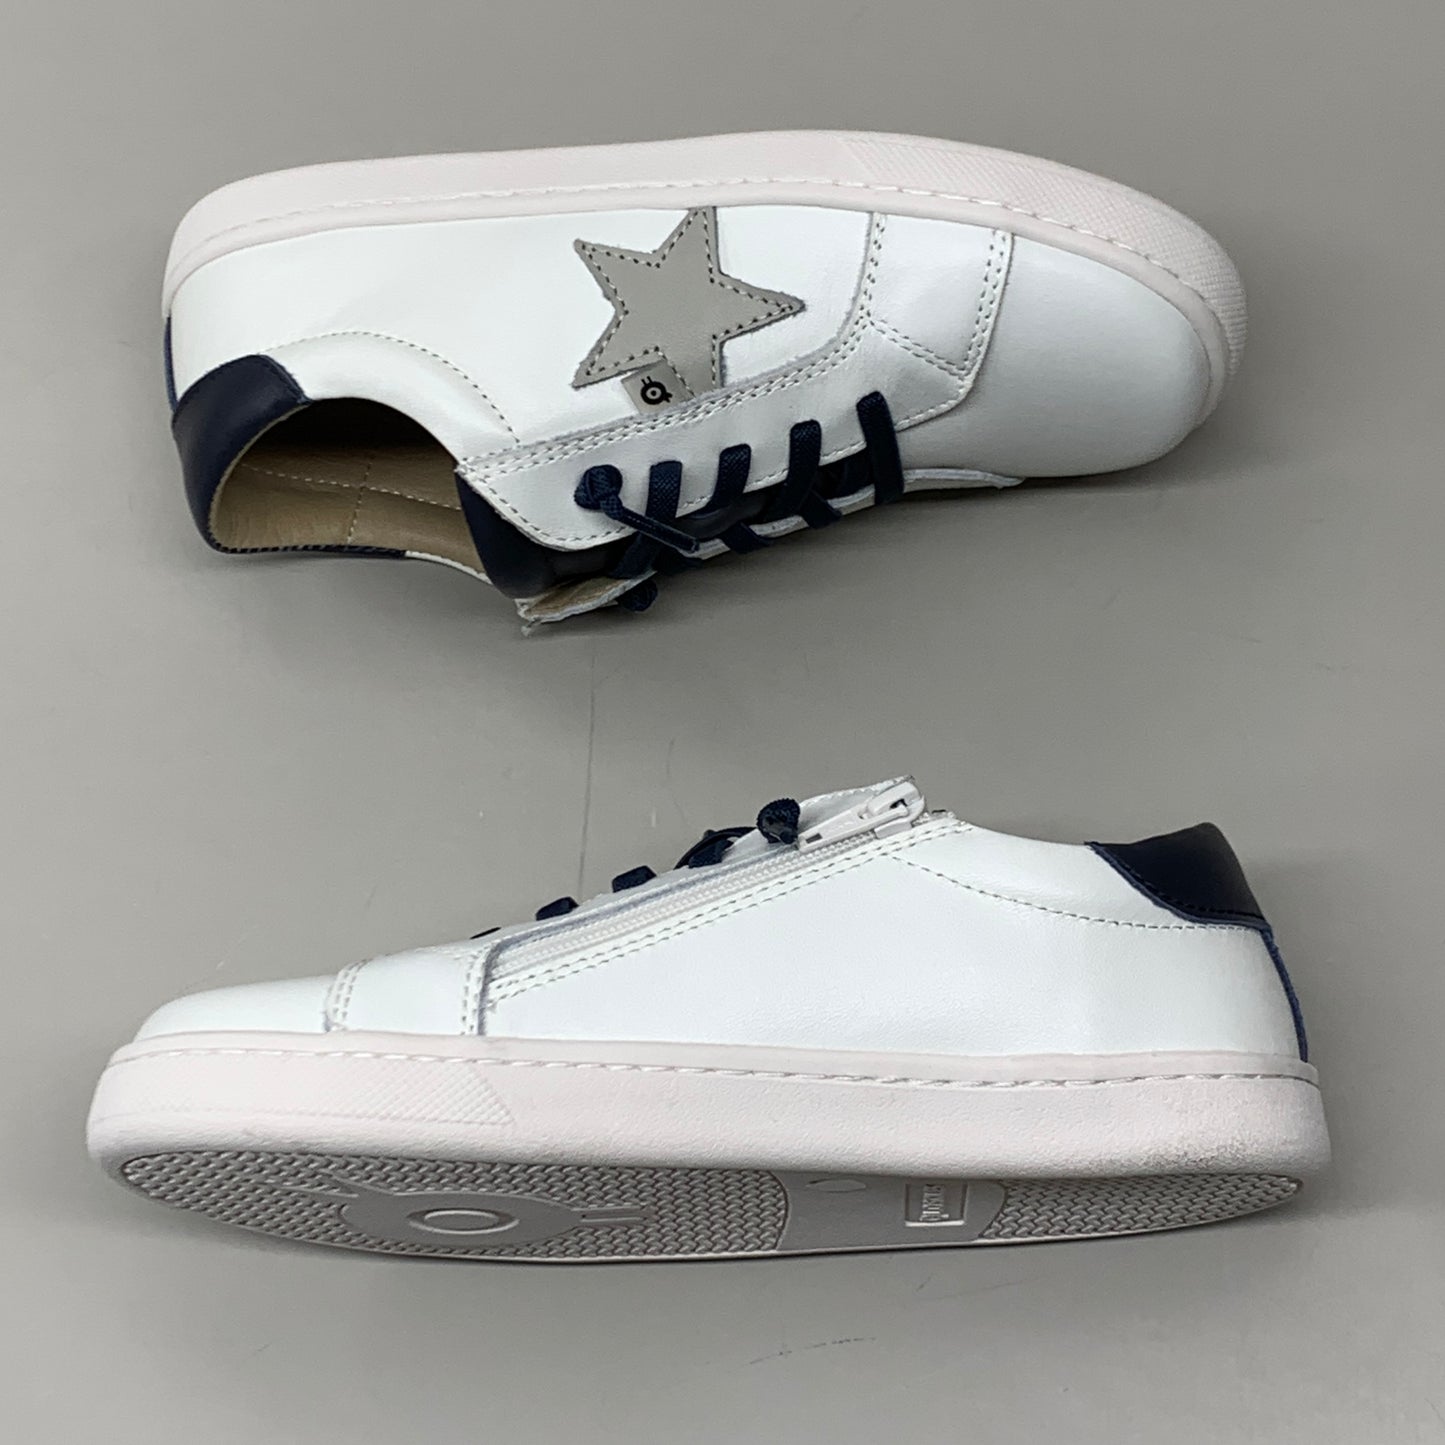 OLD SOLES Comet Runner Sneakers Kid’s Sz 10 EU 27 Snow/Navy/Gris #6149